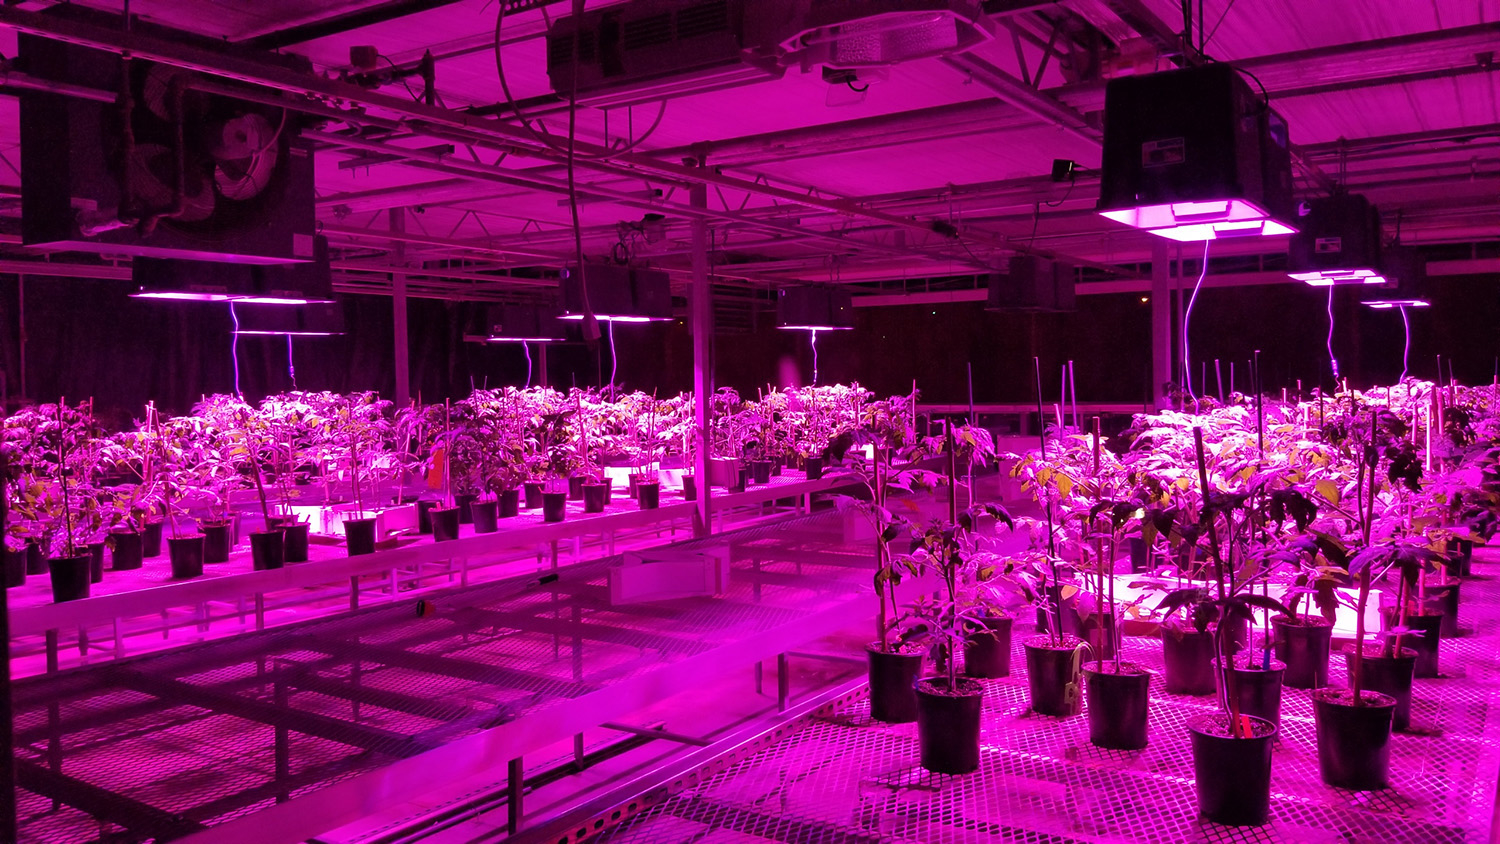 Crops grow under purple light in indoor farm